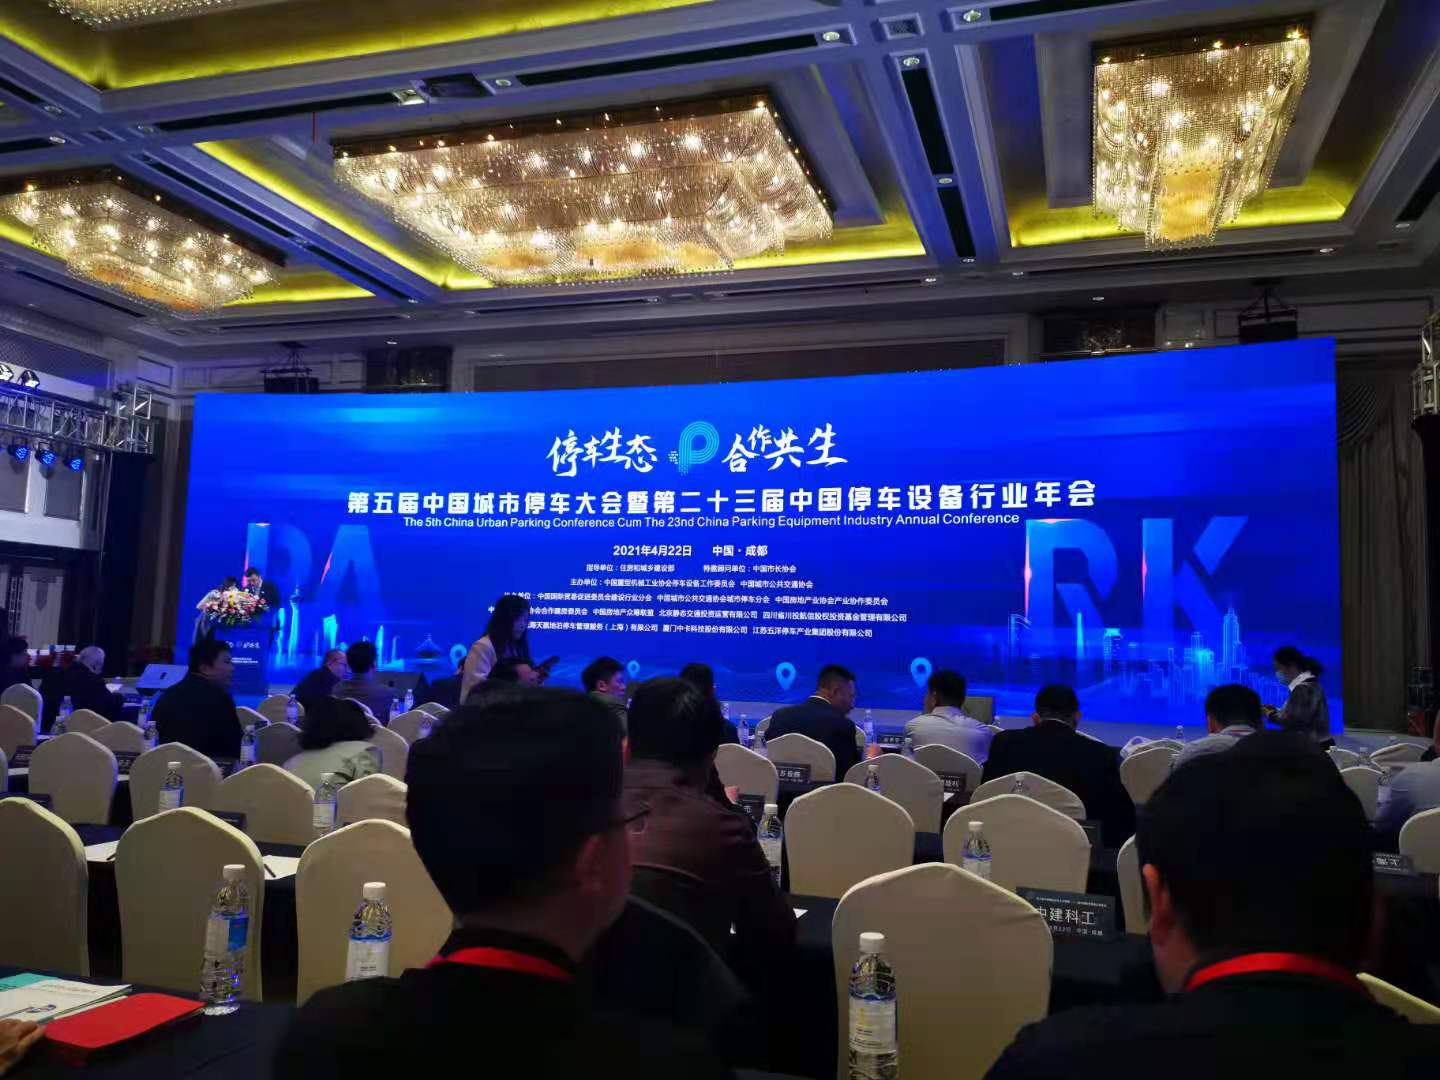 名家智慧预祝第五届中国城市停车大会暨二十三届中国停车设备行业年会圆满成功